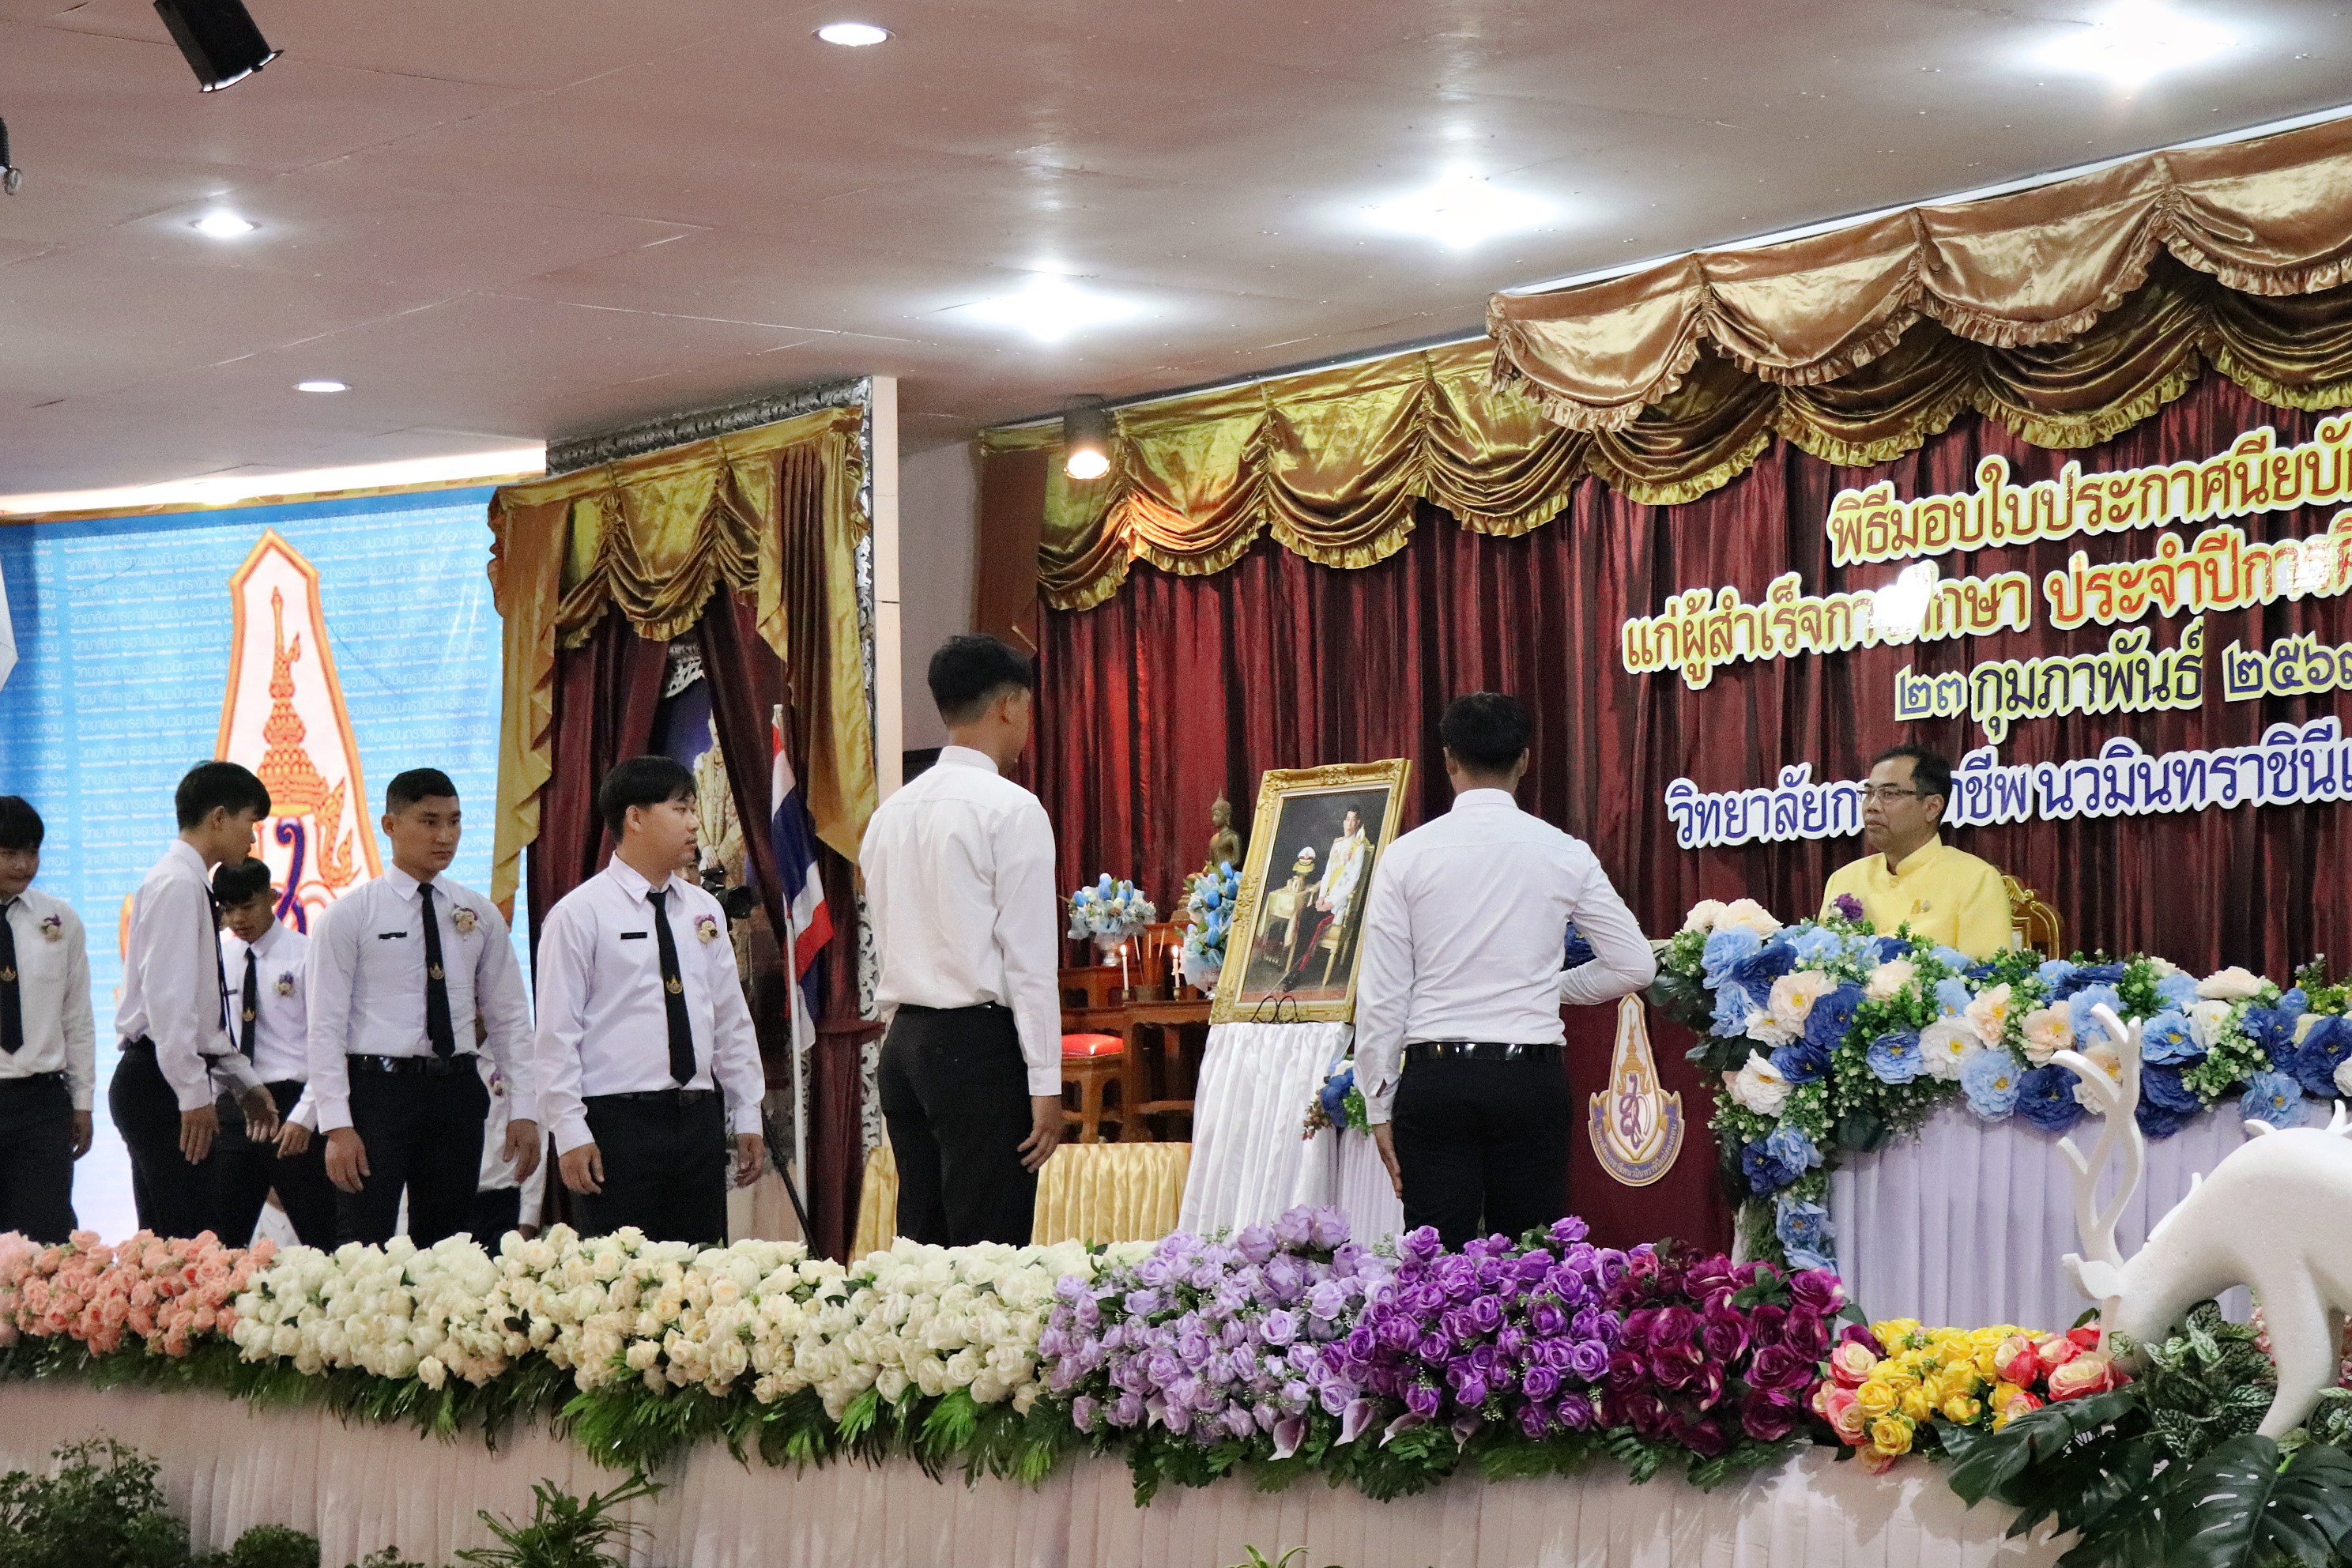 ผู้ว่าราชการจังหวัดแม่ฮ่องสอนมอบประกาศนียบัตรแก่ผู้สำเร็จการศึกษา วิทยาลัยการอาชีพนวมินทราชินีแม่ฮ่องสอน ประจำปีการศึกษา 2566